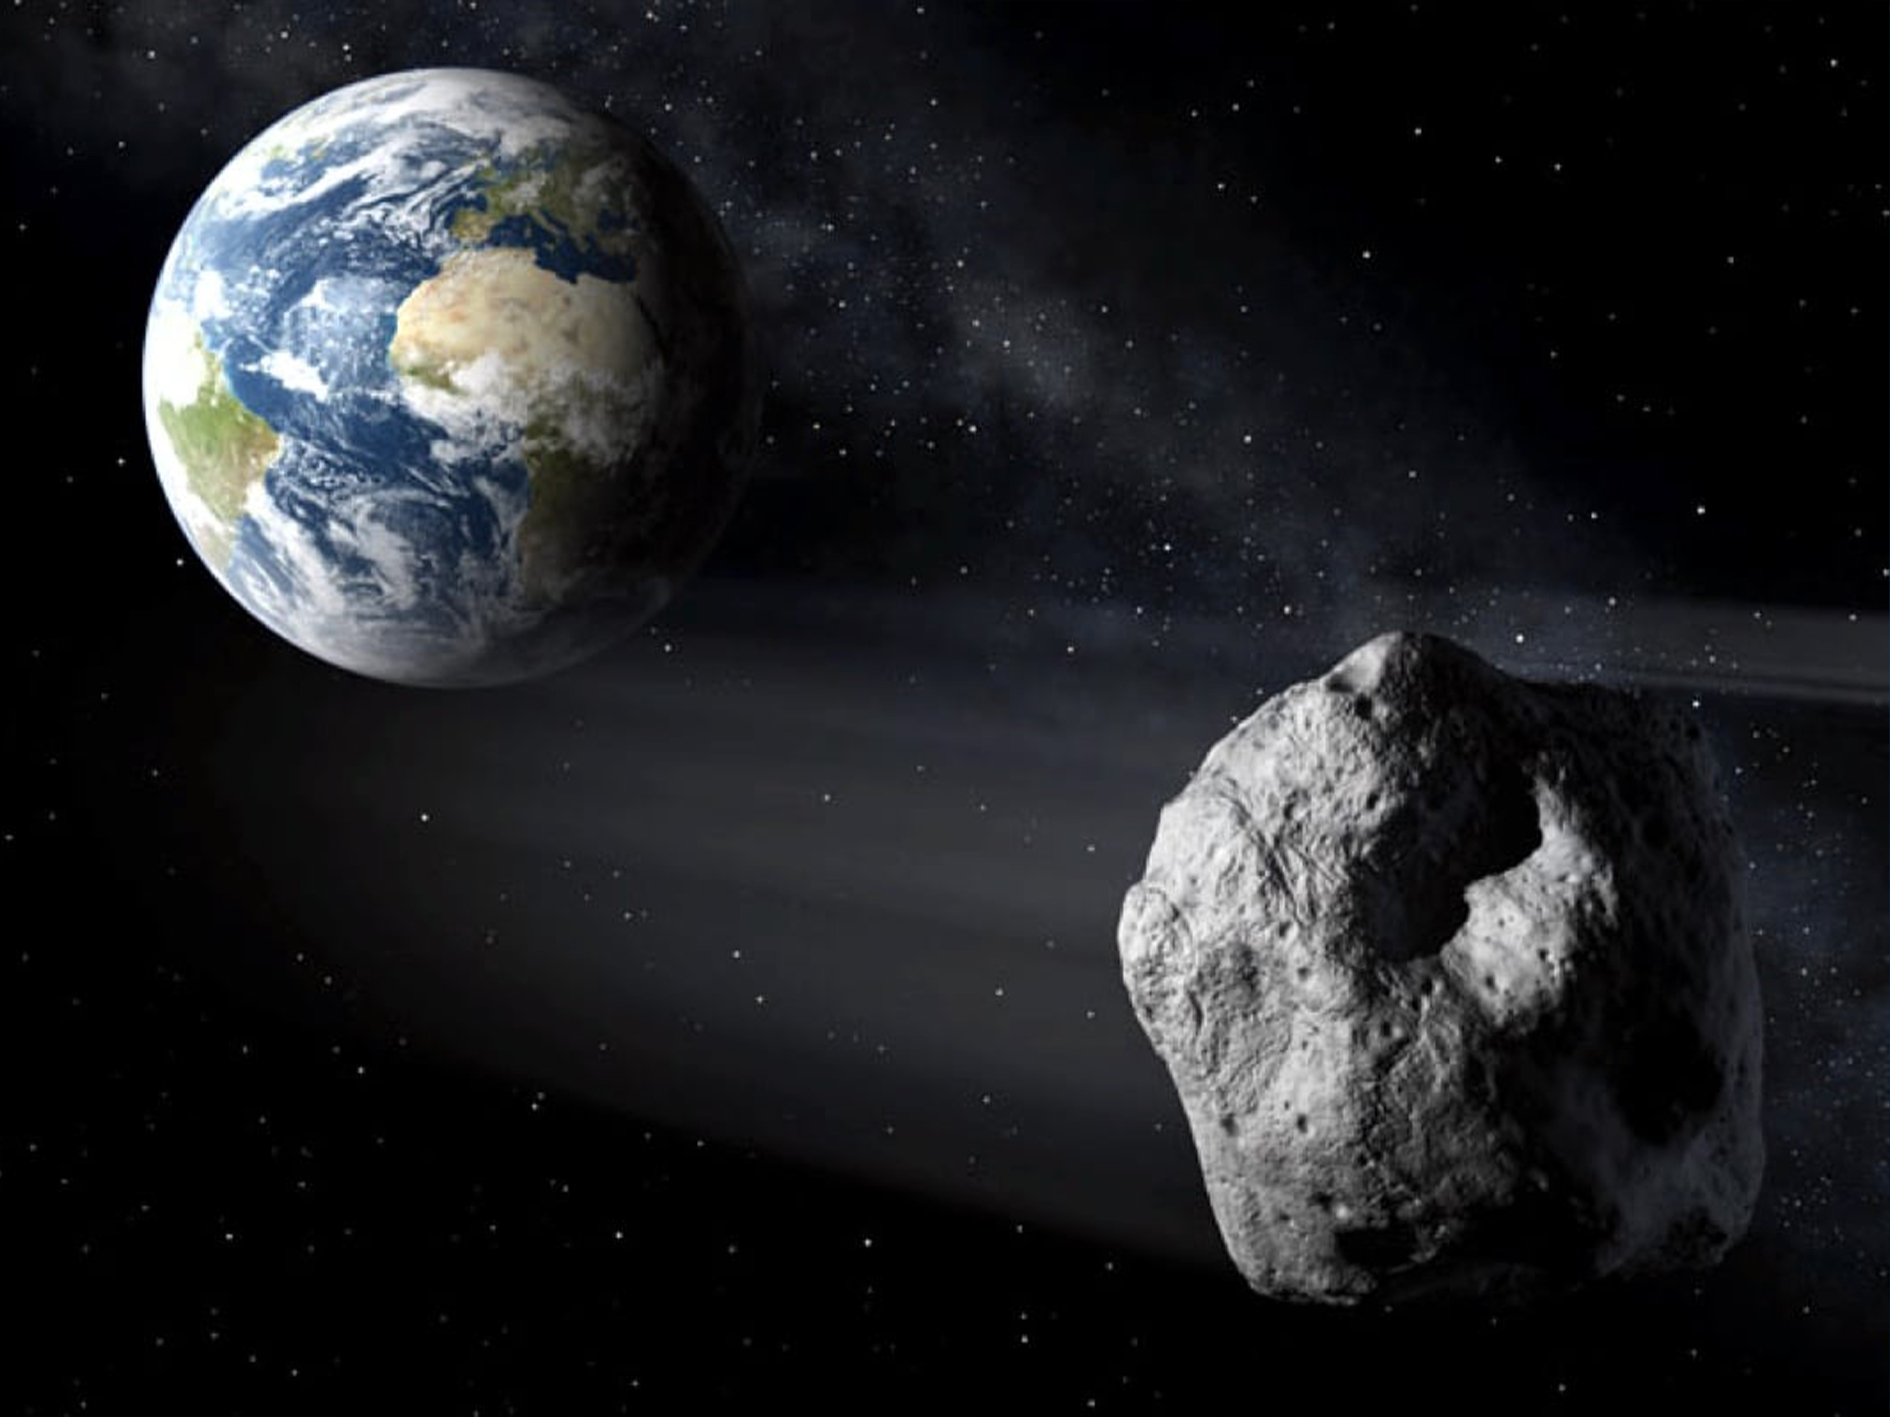 К Земле летит астероид Апофис, который столкнется с нашей планетой через 49 лет и уничтожит все живое